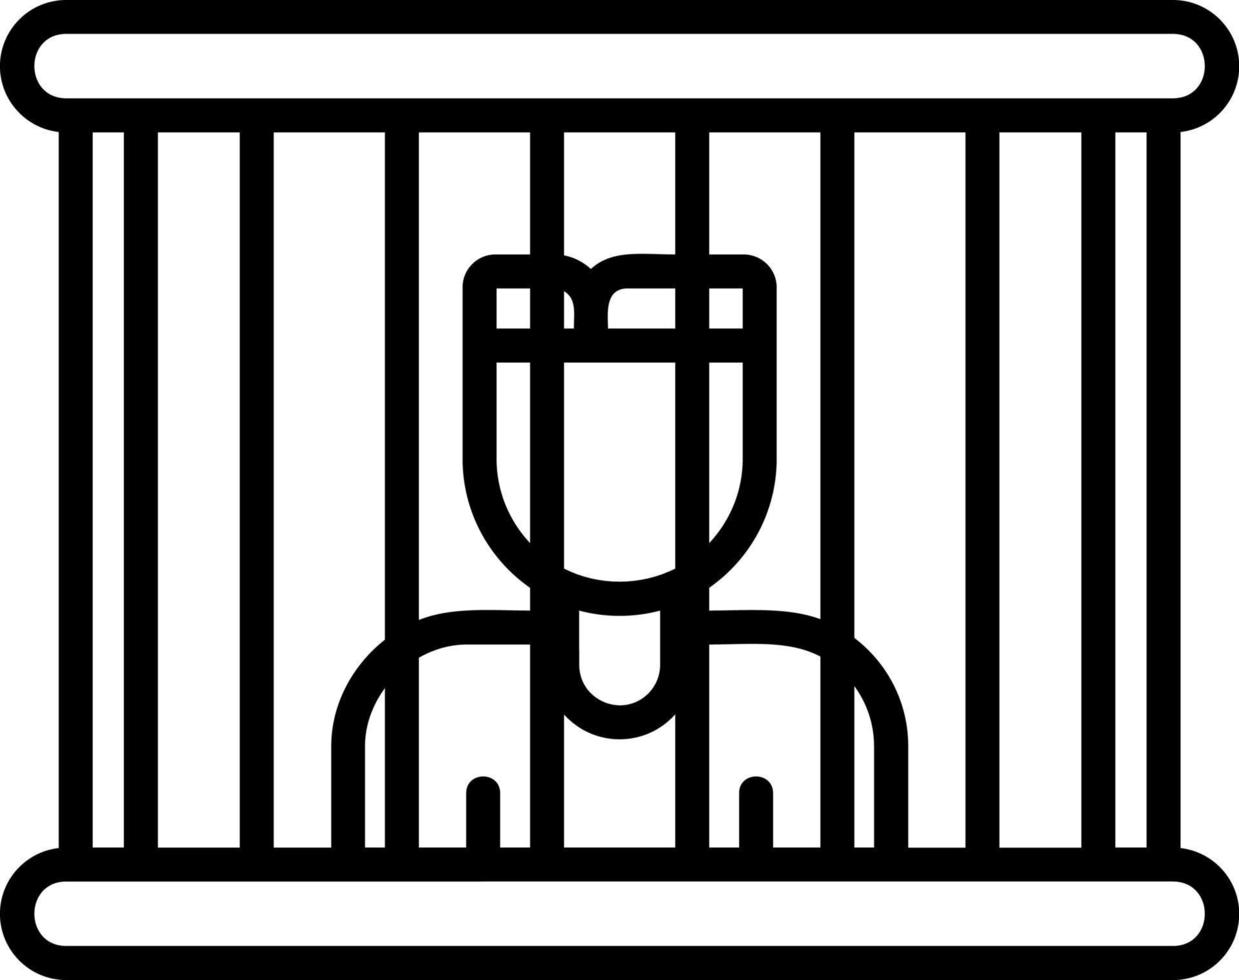 diseño de icono de vector de prisionero